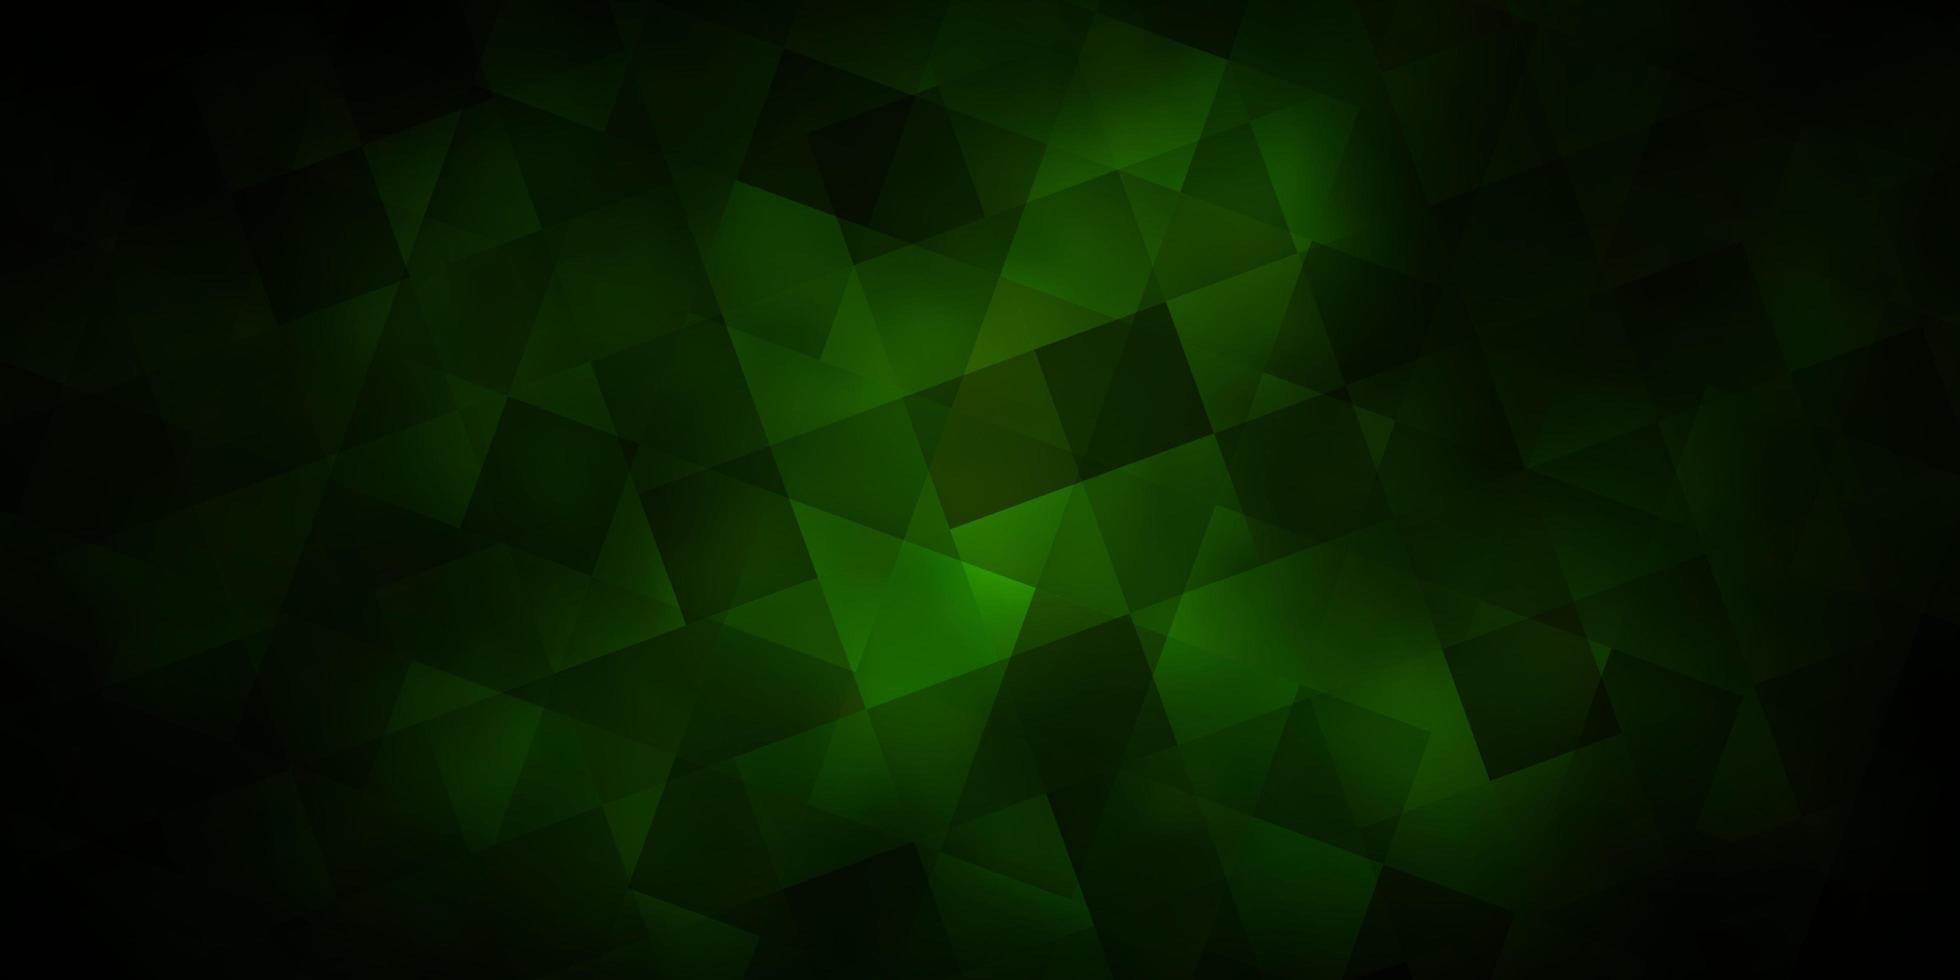 diseño de vector verde oscuro con rectángulos, triángulos.